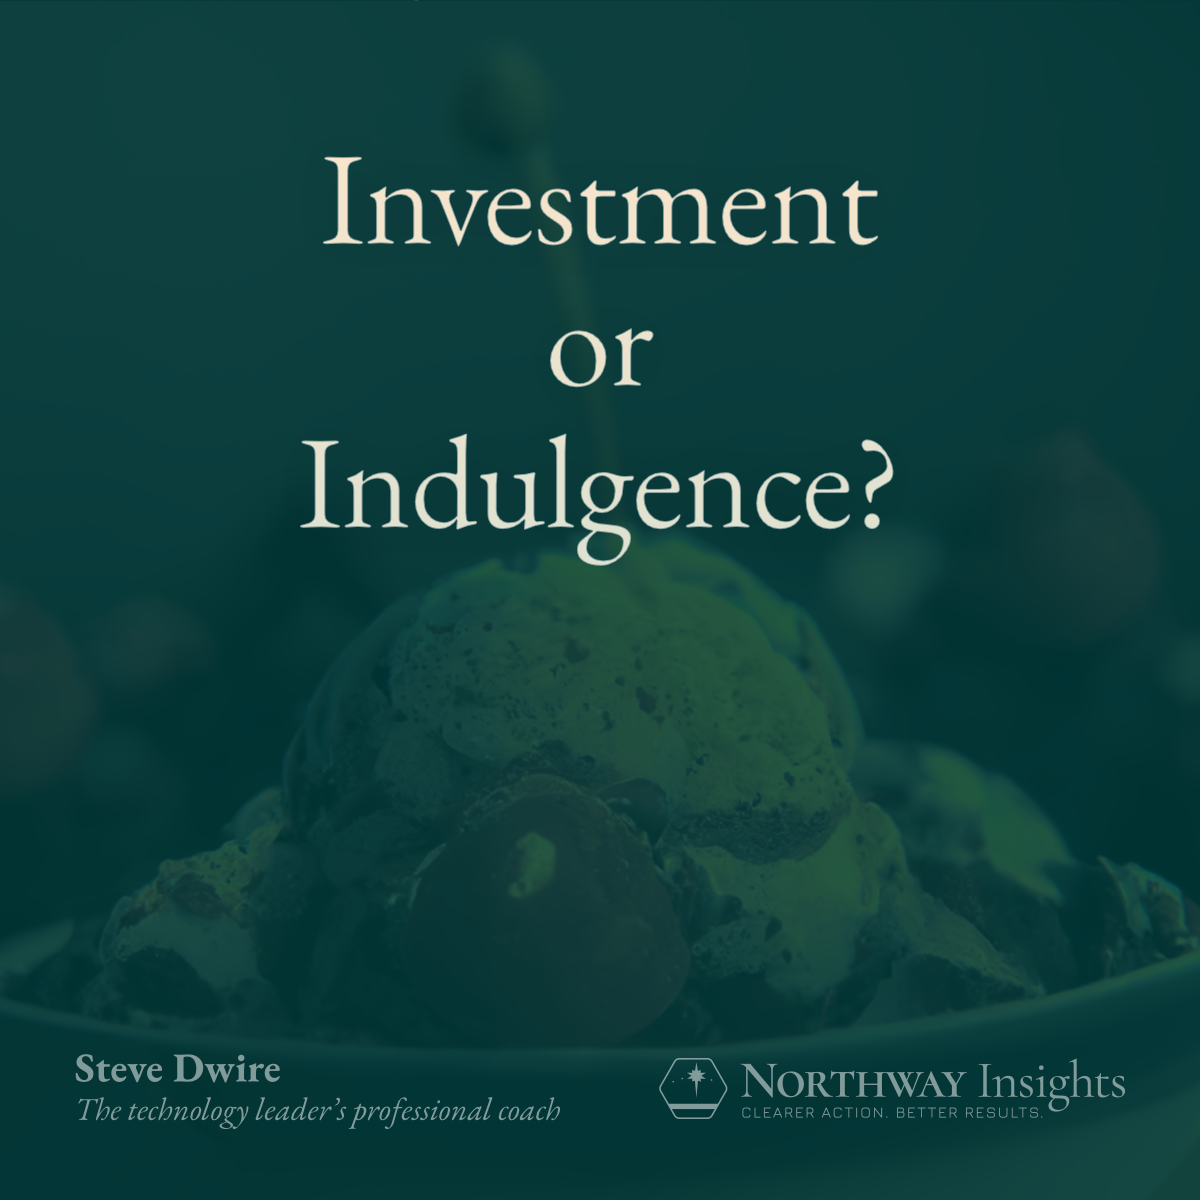 Investment or Indulgence? (photo of ice cream sundae in background)